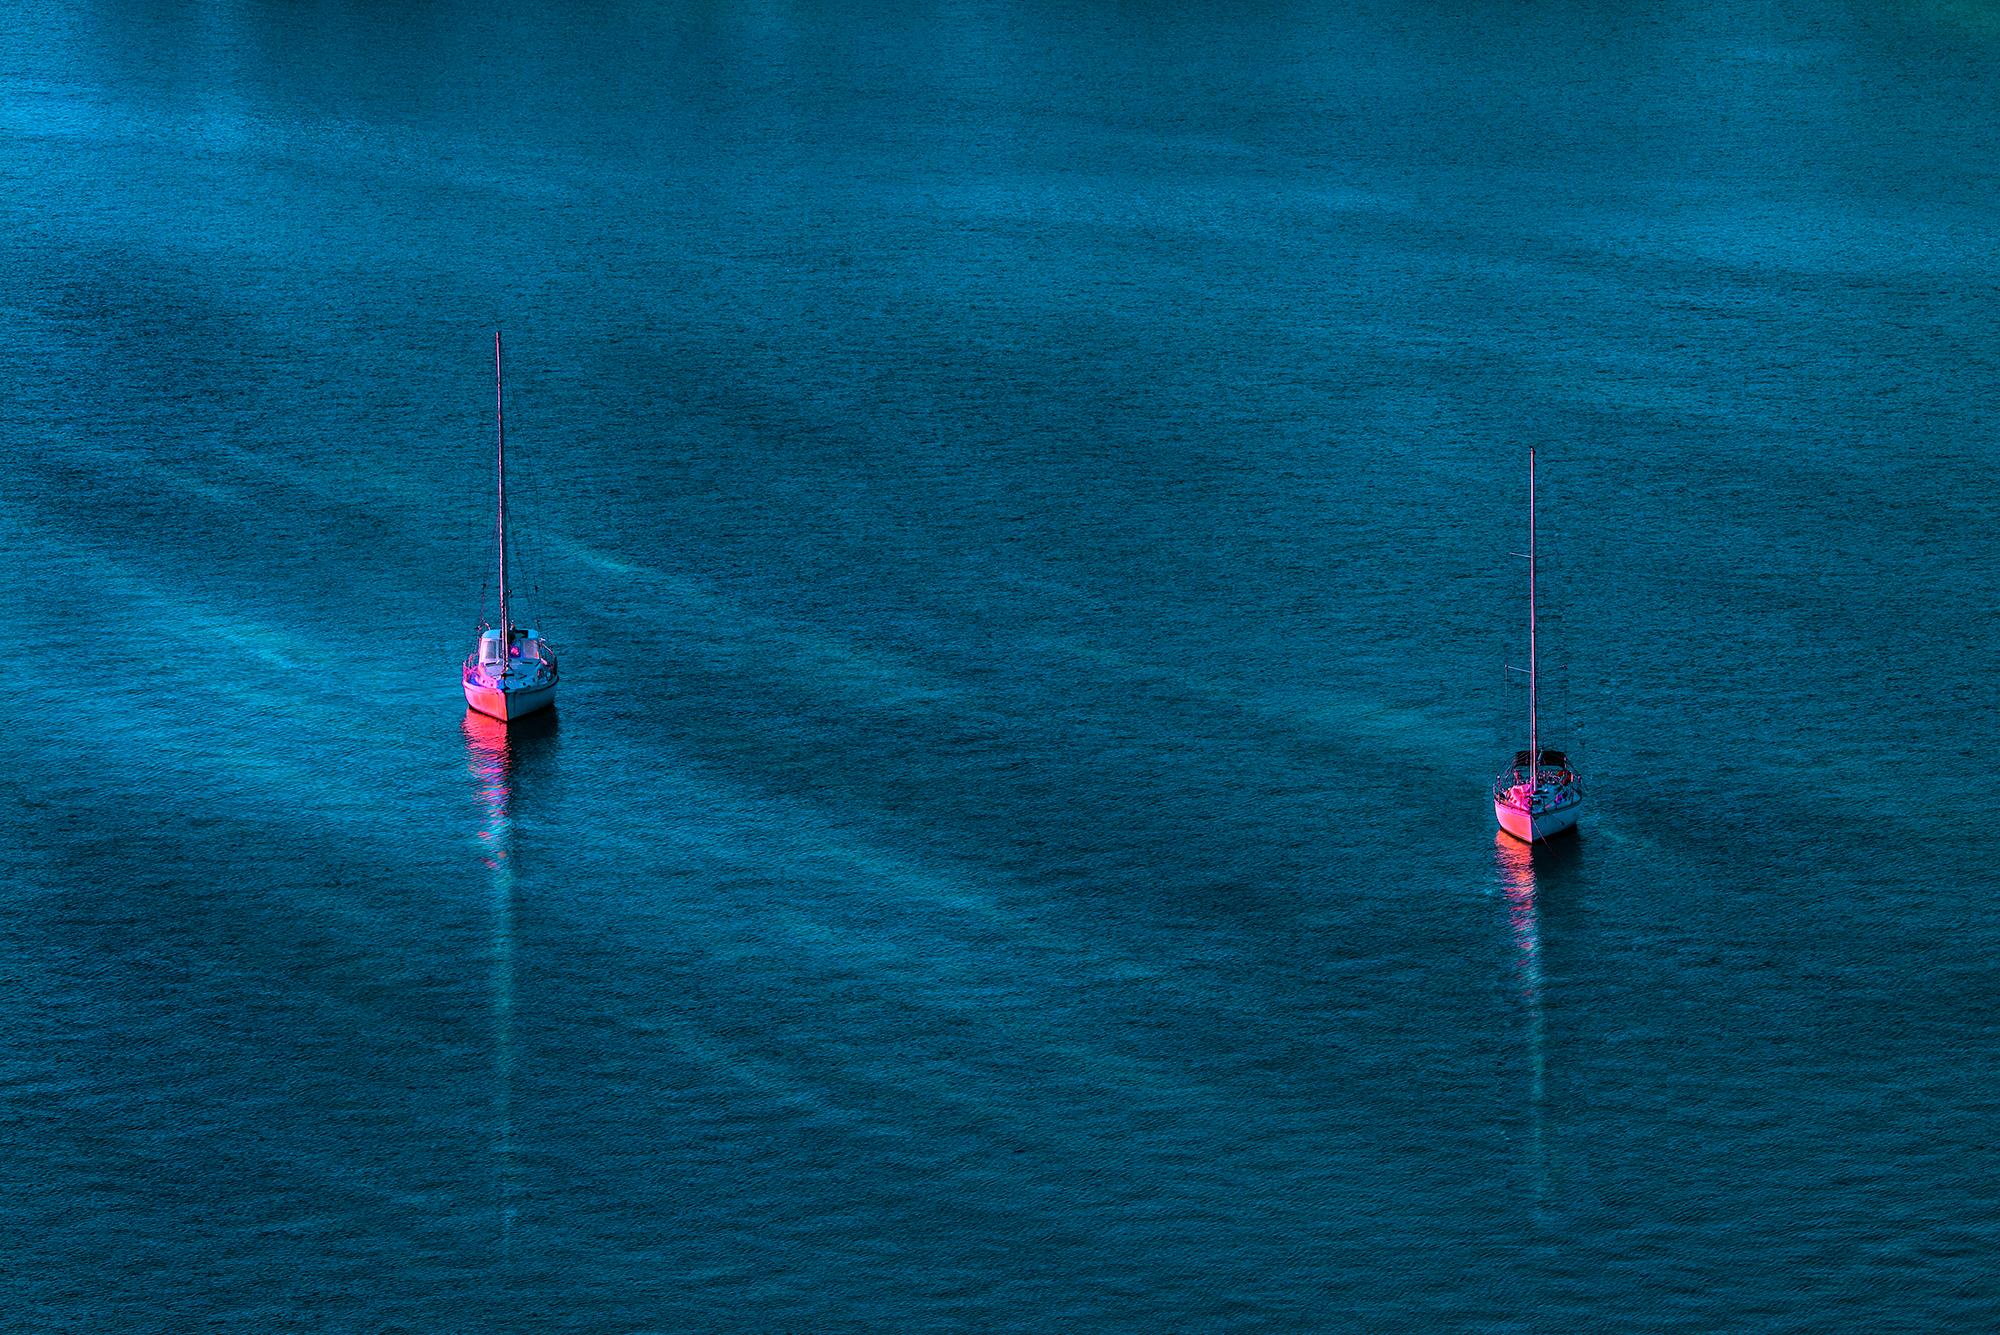 Rosa Segelboote auf einem blau-grünen Meer 